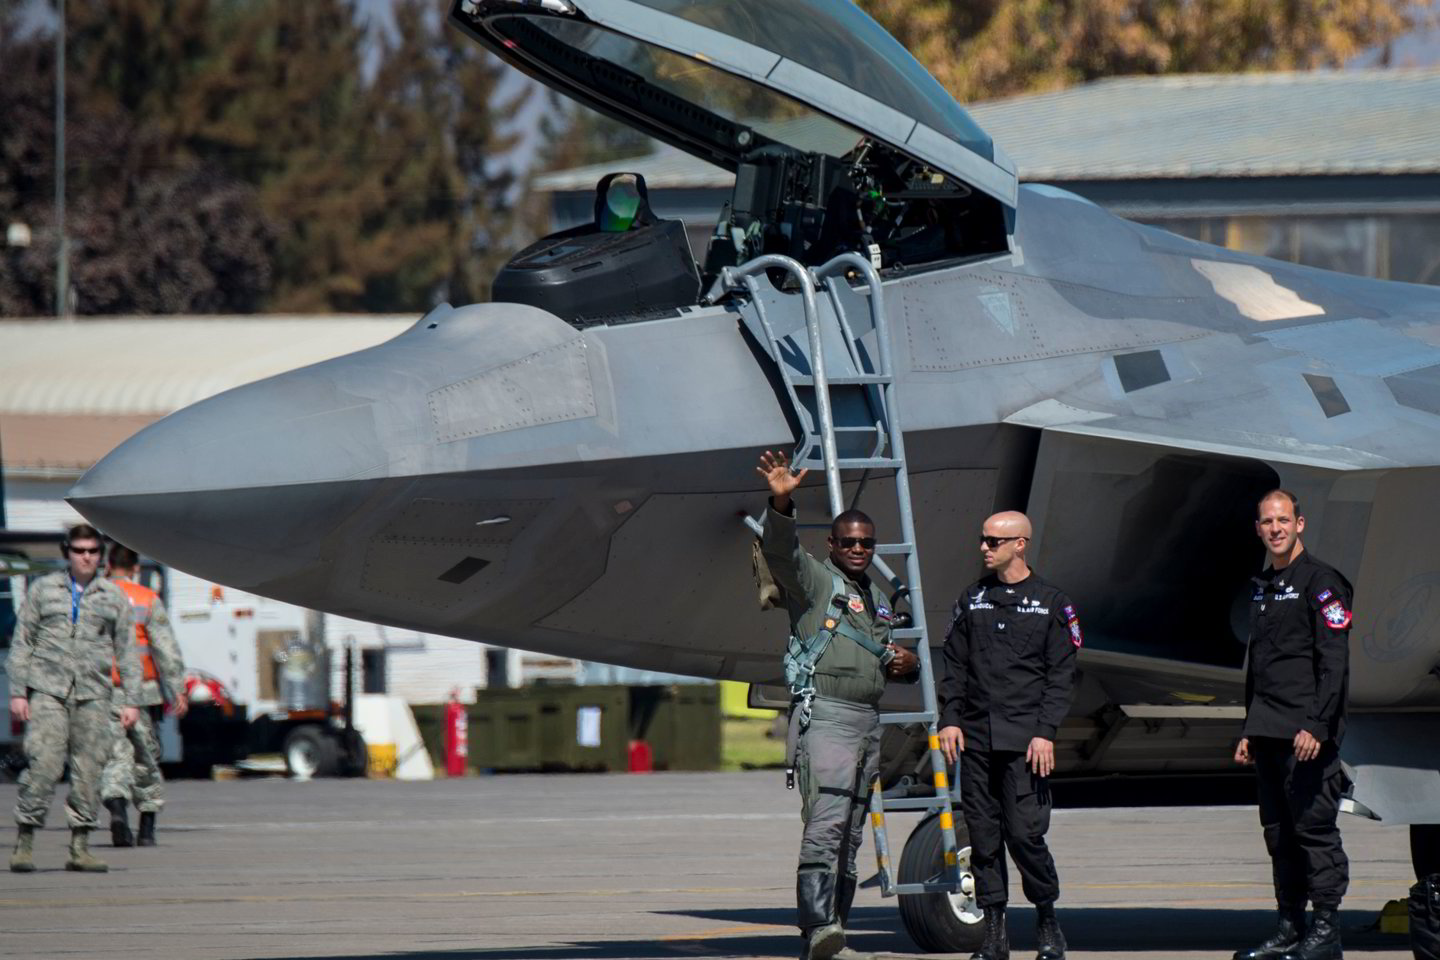  F-22 Raptor – penktos kartos JAV karinių oro pajėgų stealth technologija paremtas, radarų sunkiai pastebimas naikintuvas. Pagrindinė jo paskirtis – oro erdvės užvaldymas ir kontrolė prieš valstybes, turinčias galingas oro pajėgas.<br> Reuters / Scanpix nuotr.